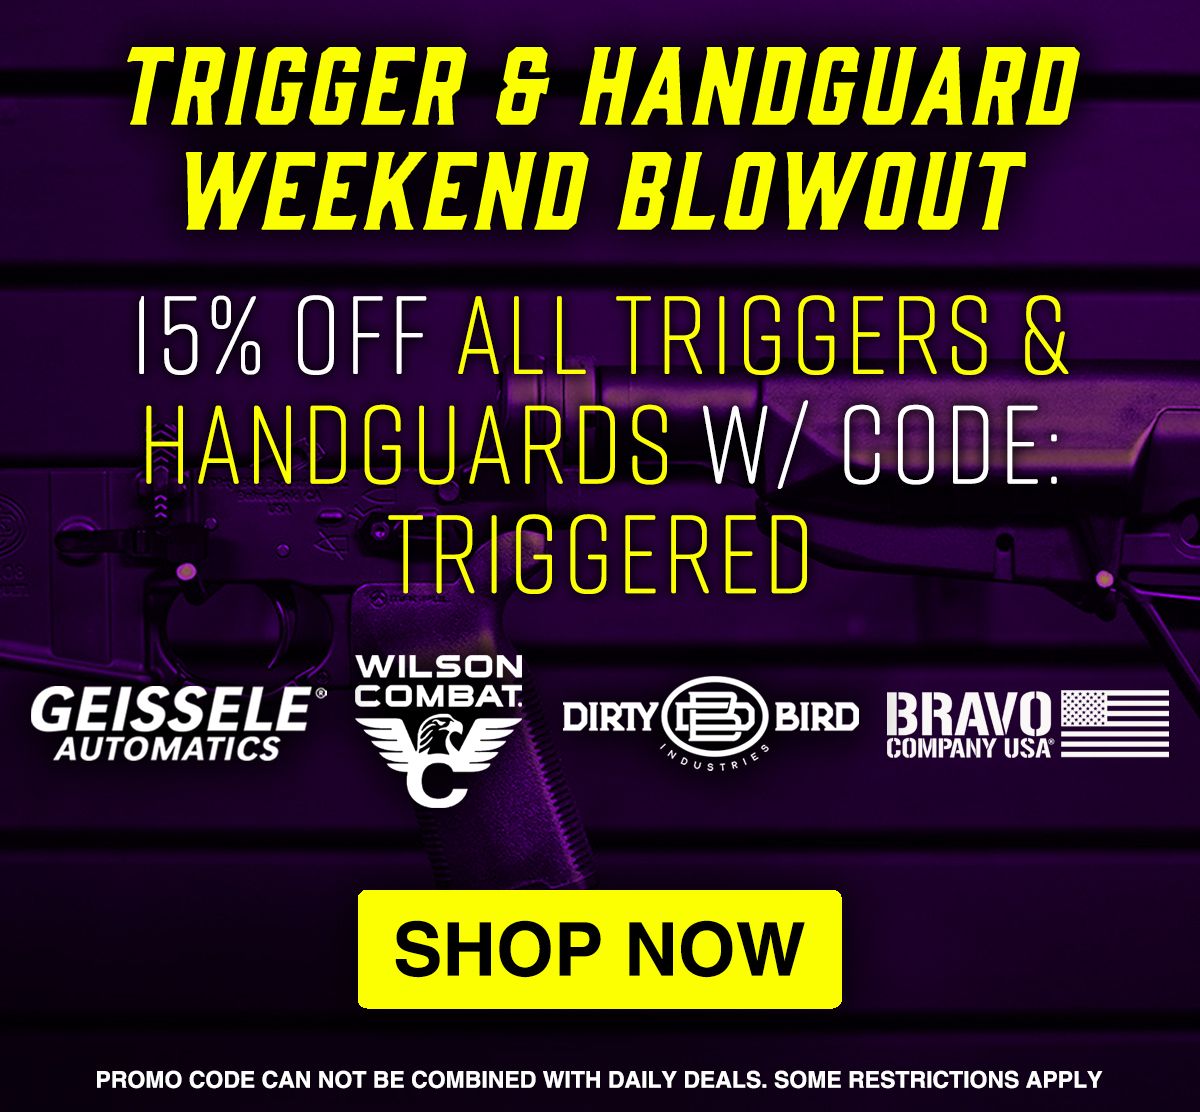 Trigger & Handguard Weekend Blowout